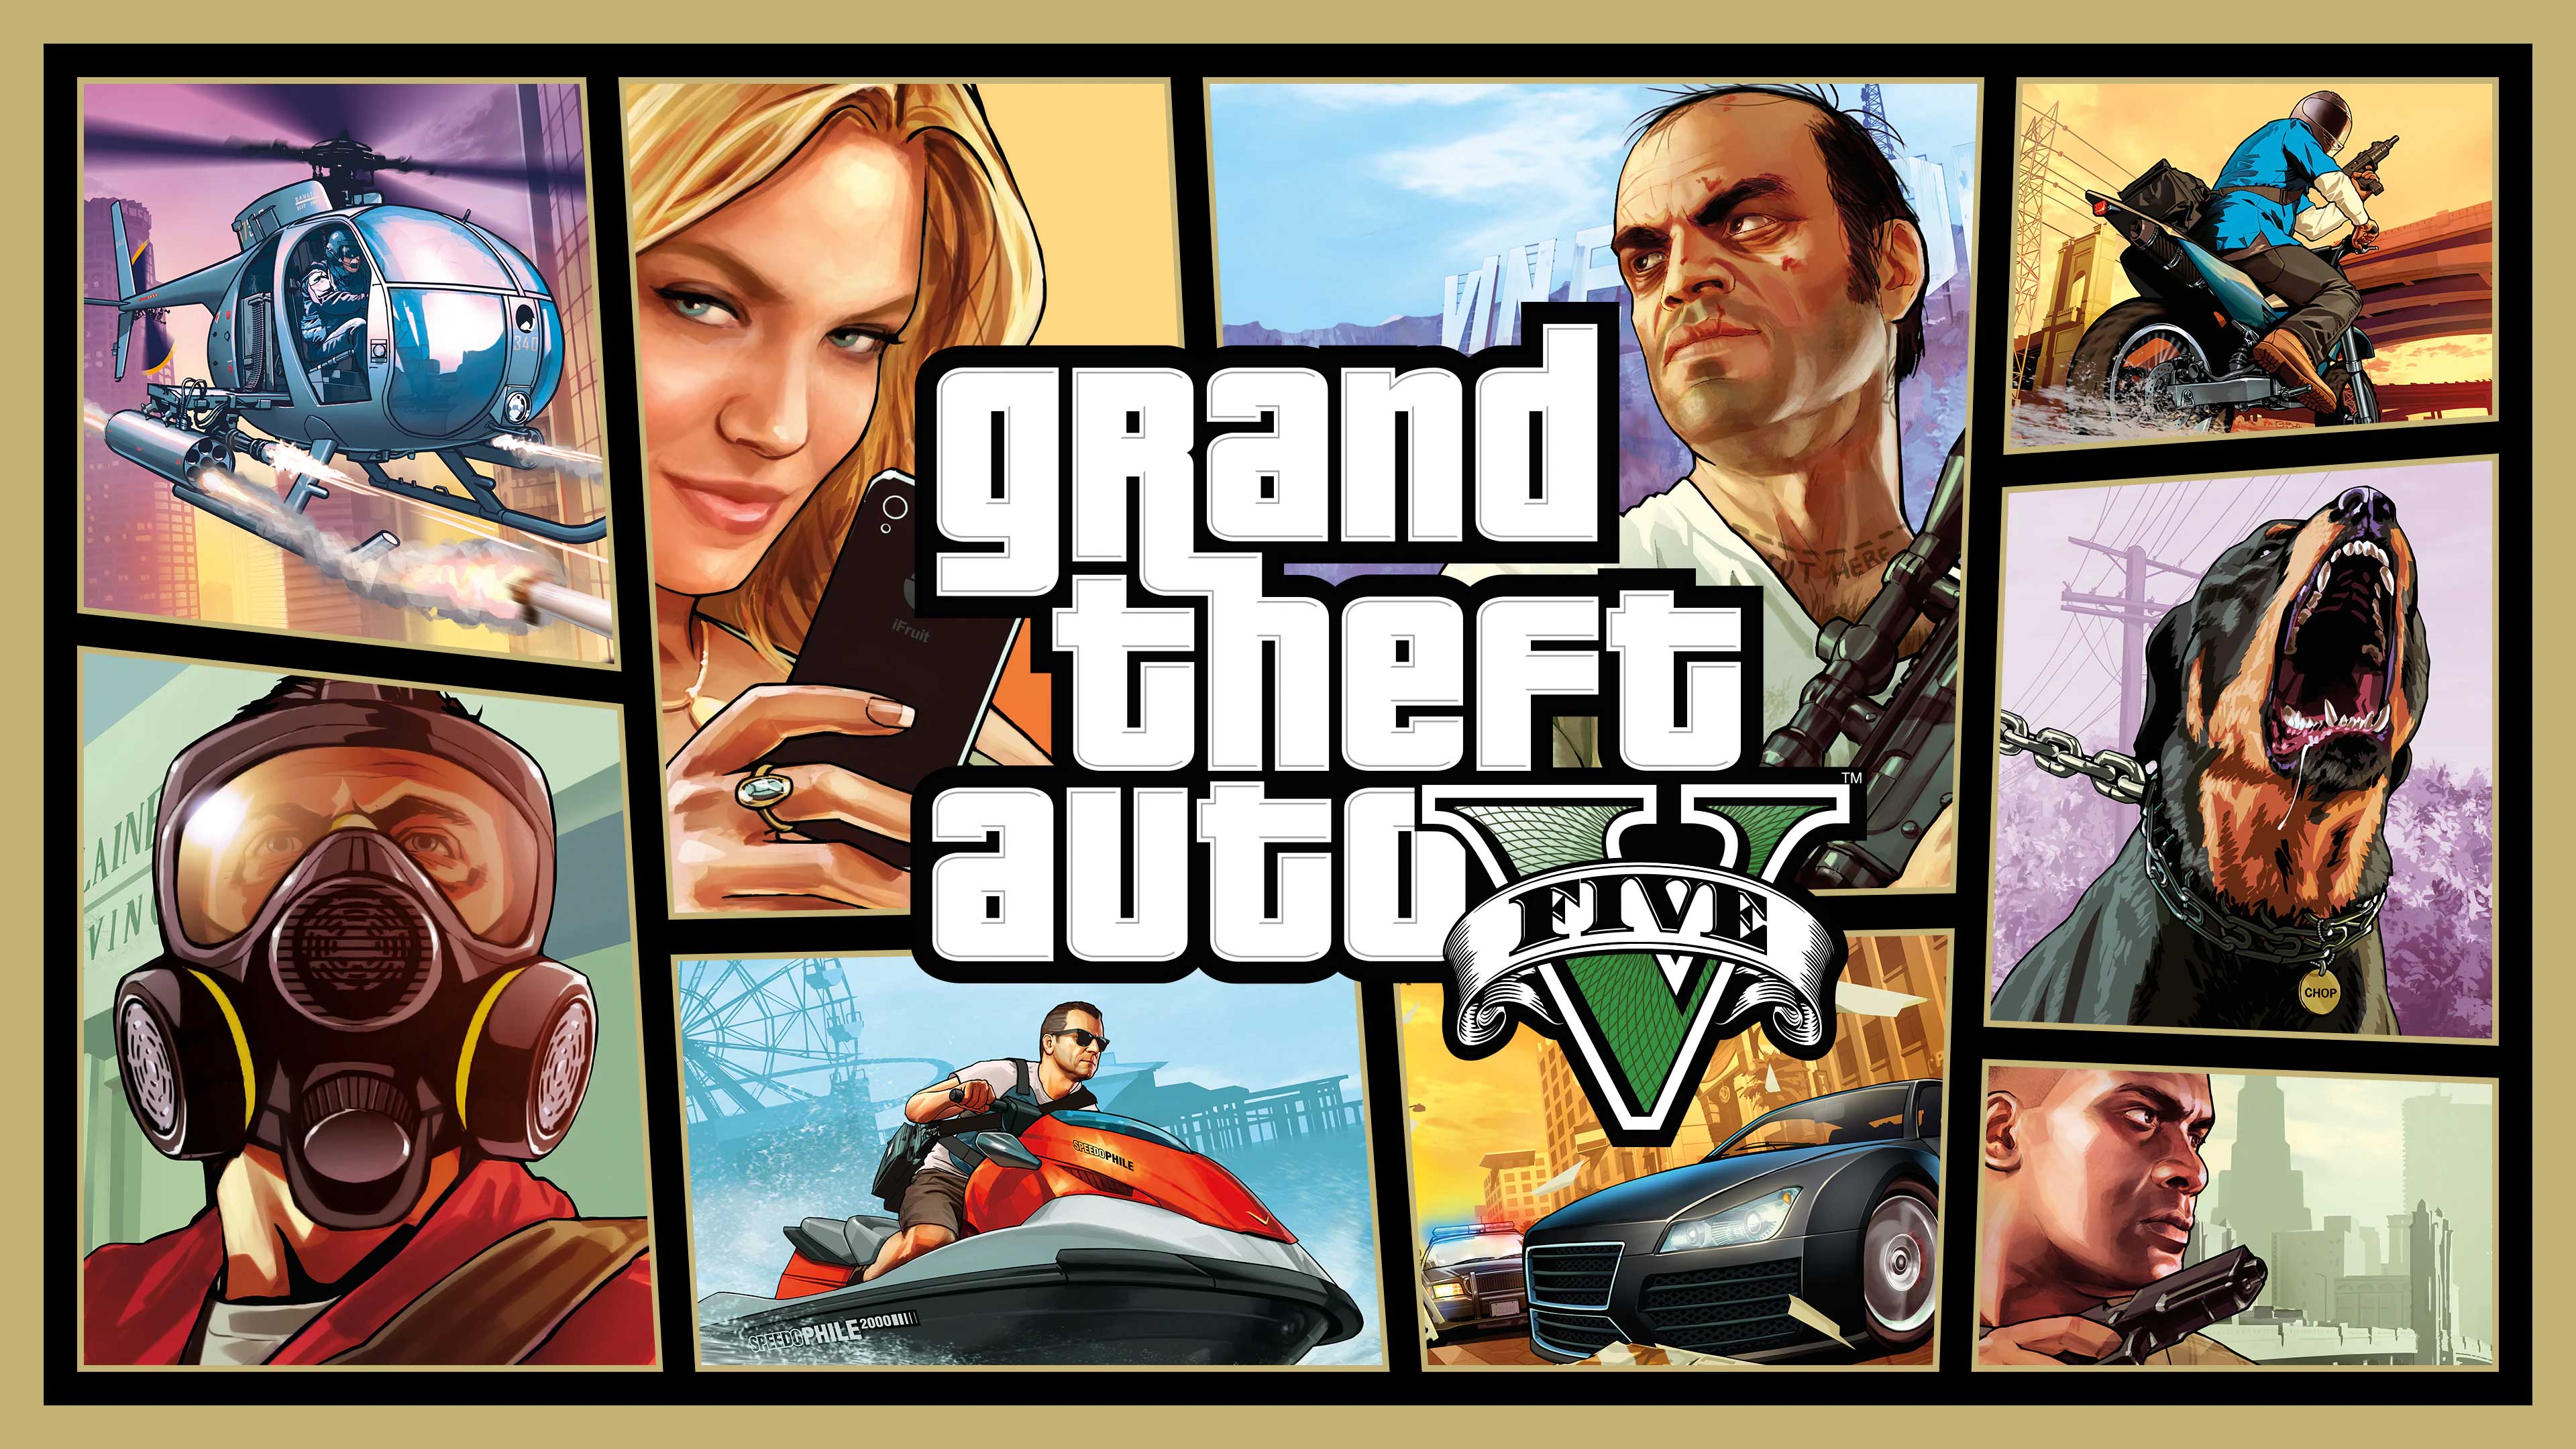 Grand Theft Auto V, V Games For U, vgamesforu.com